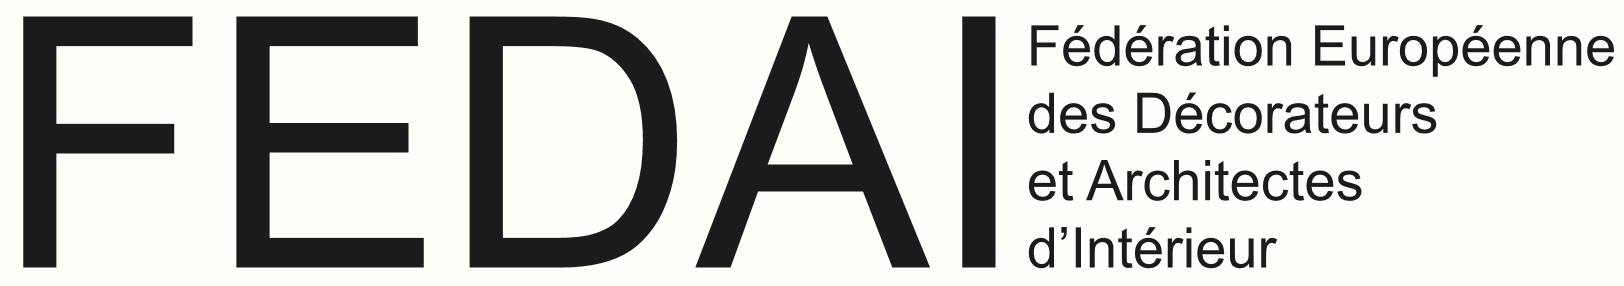 Logo Fédération Europééenne des Décorateurs et Architectes d'Intérieur